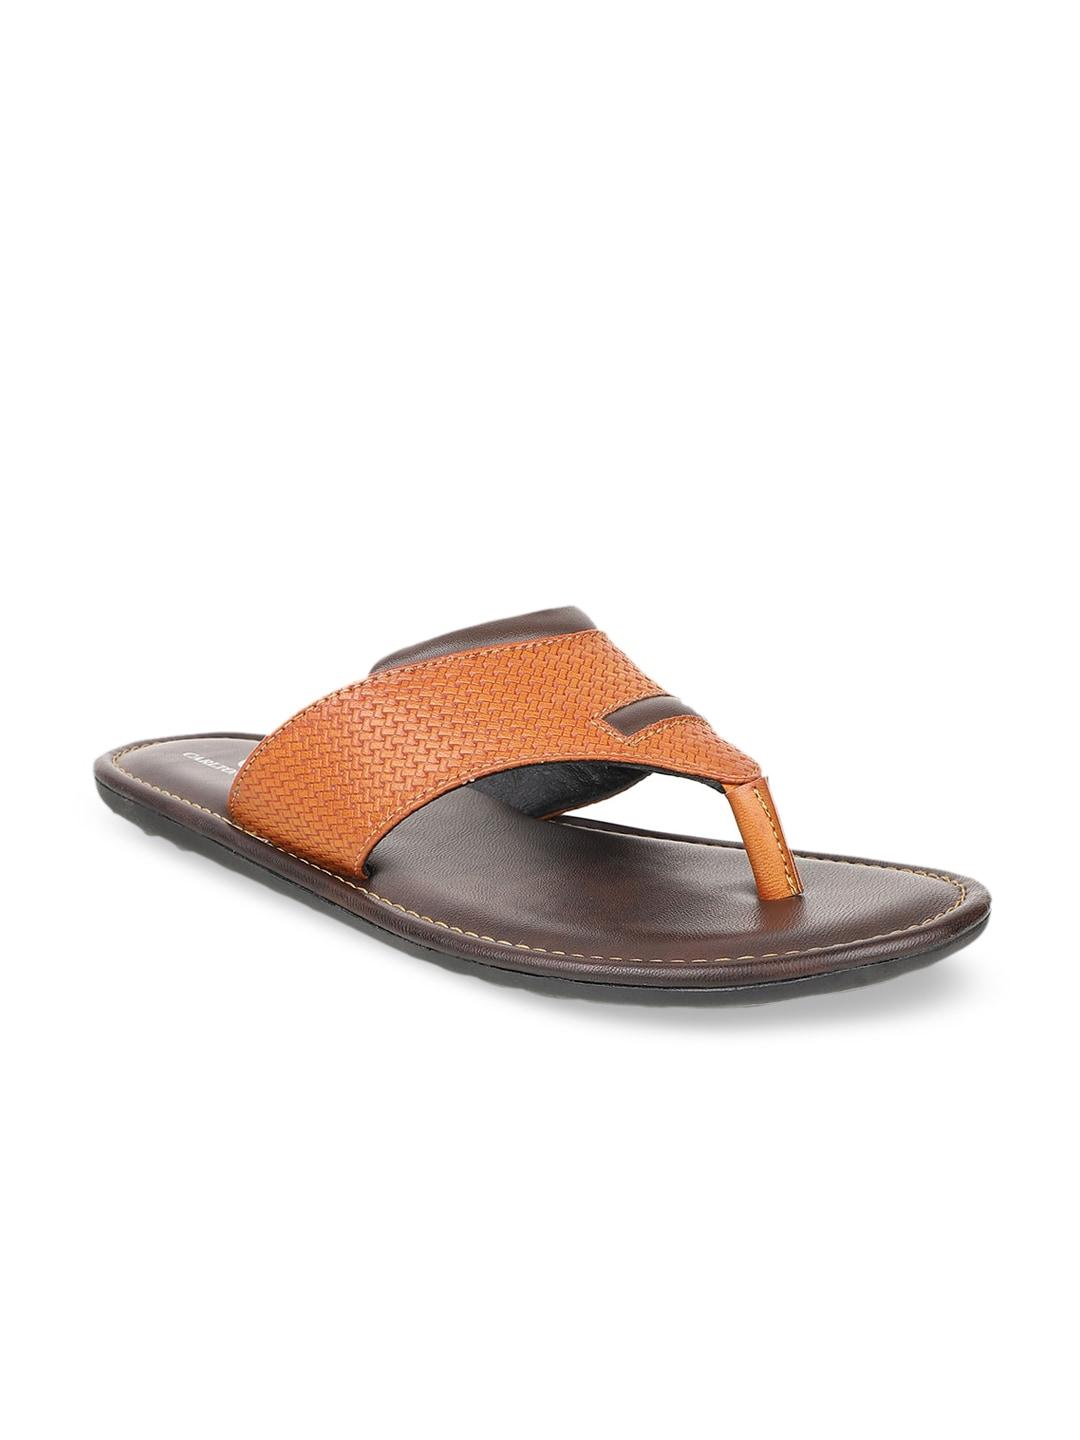 carlton-london-men-tan-brown-textured-comfort-sandals